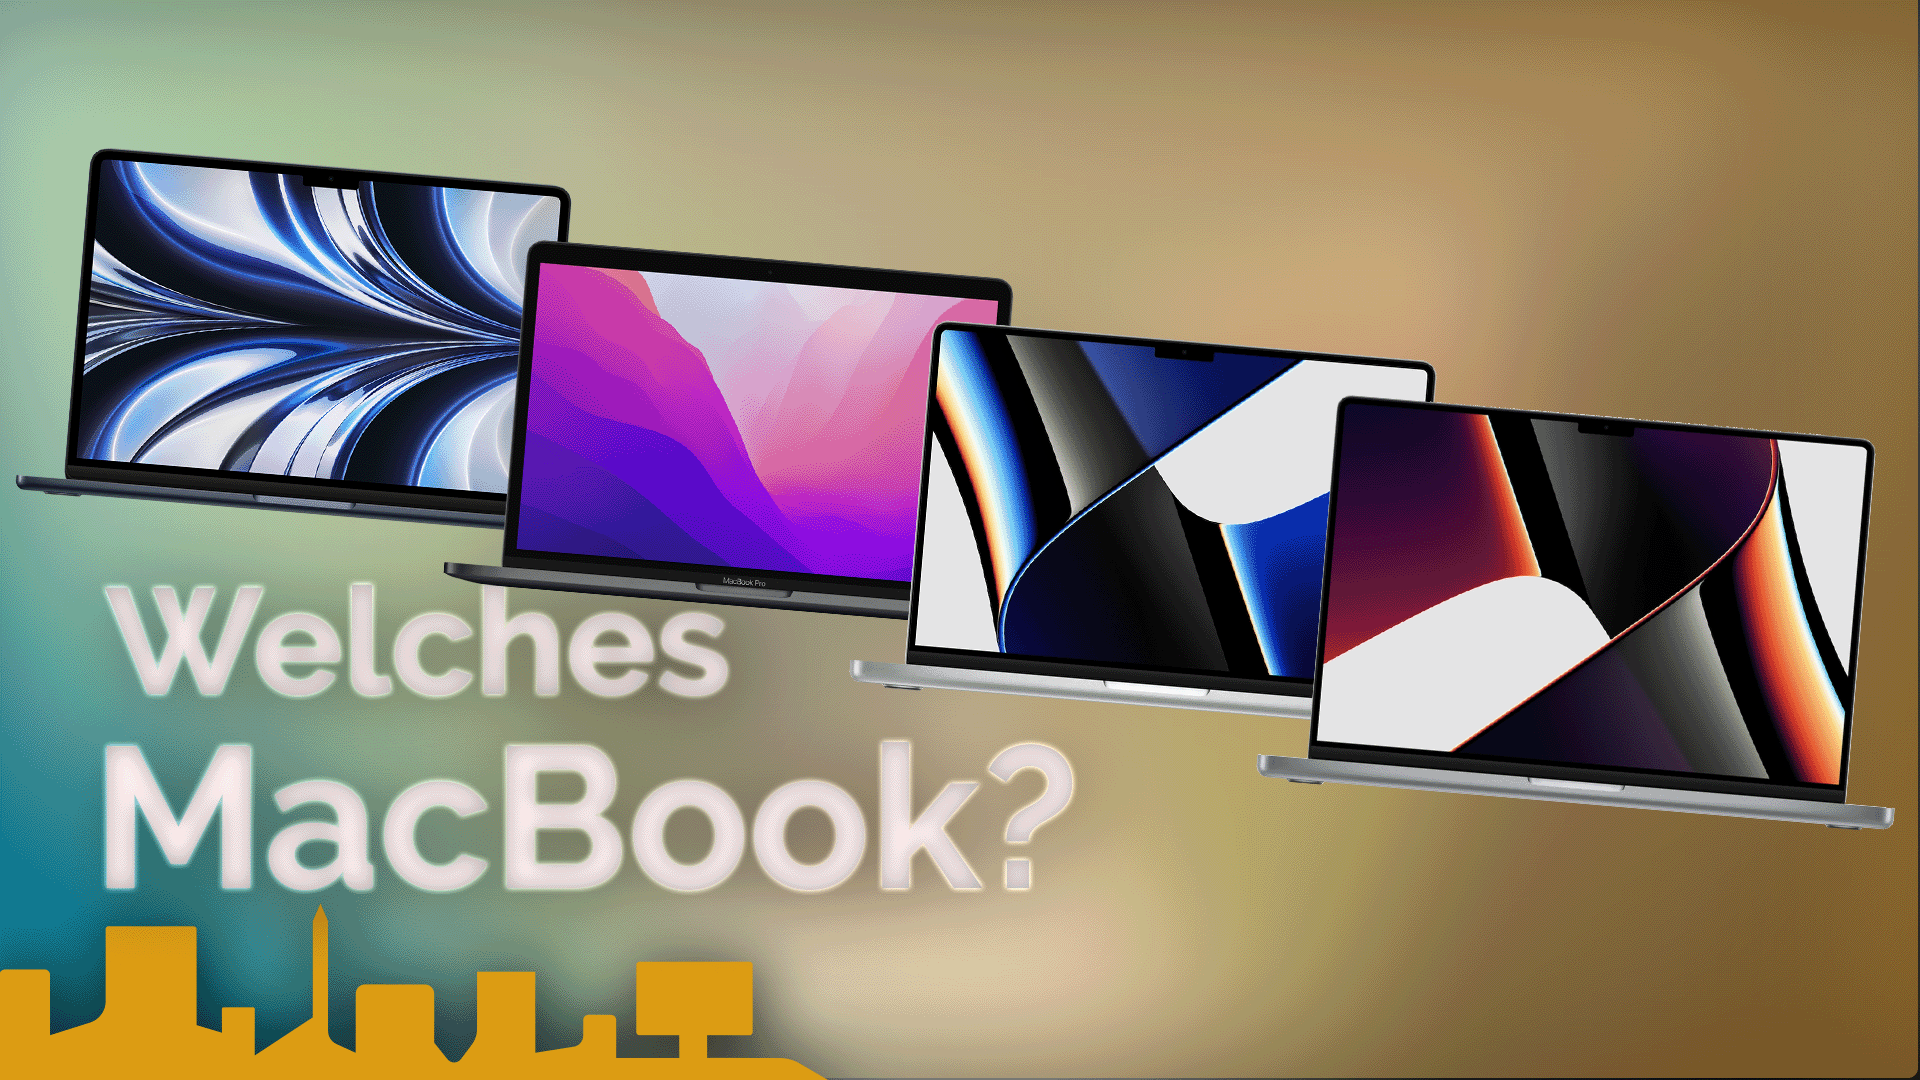 Welches MacBook? Alle Modelle im Vergleich!